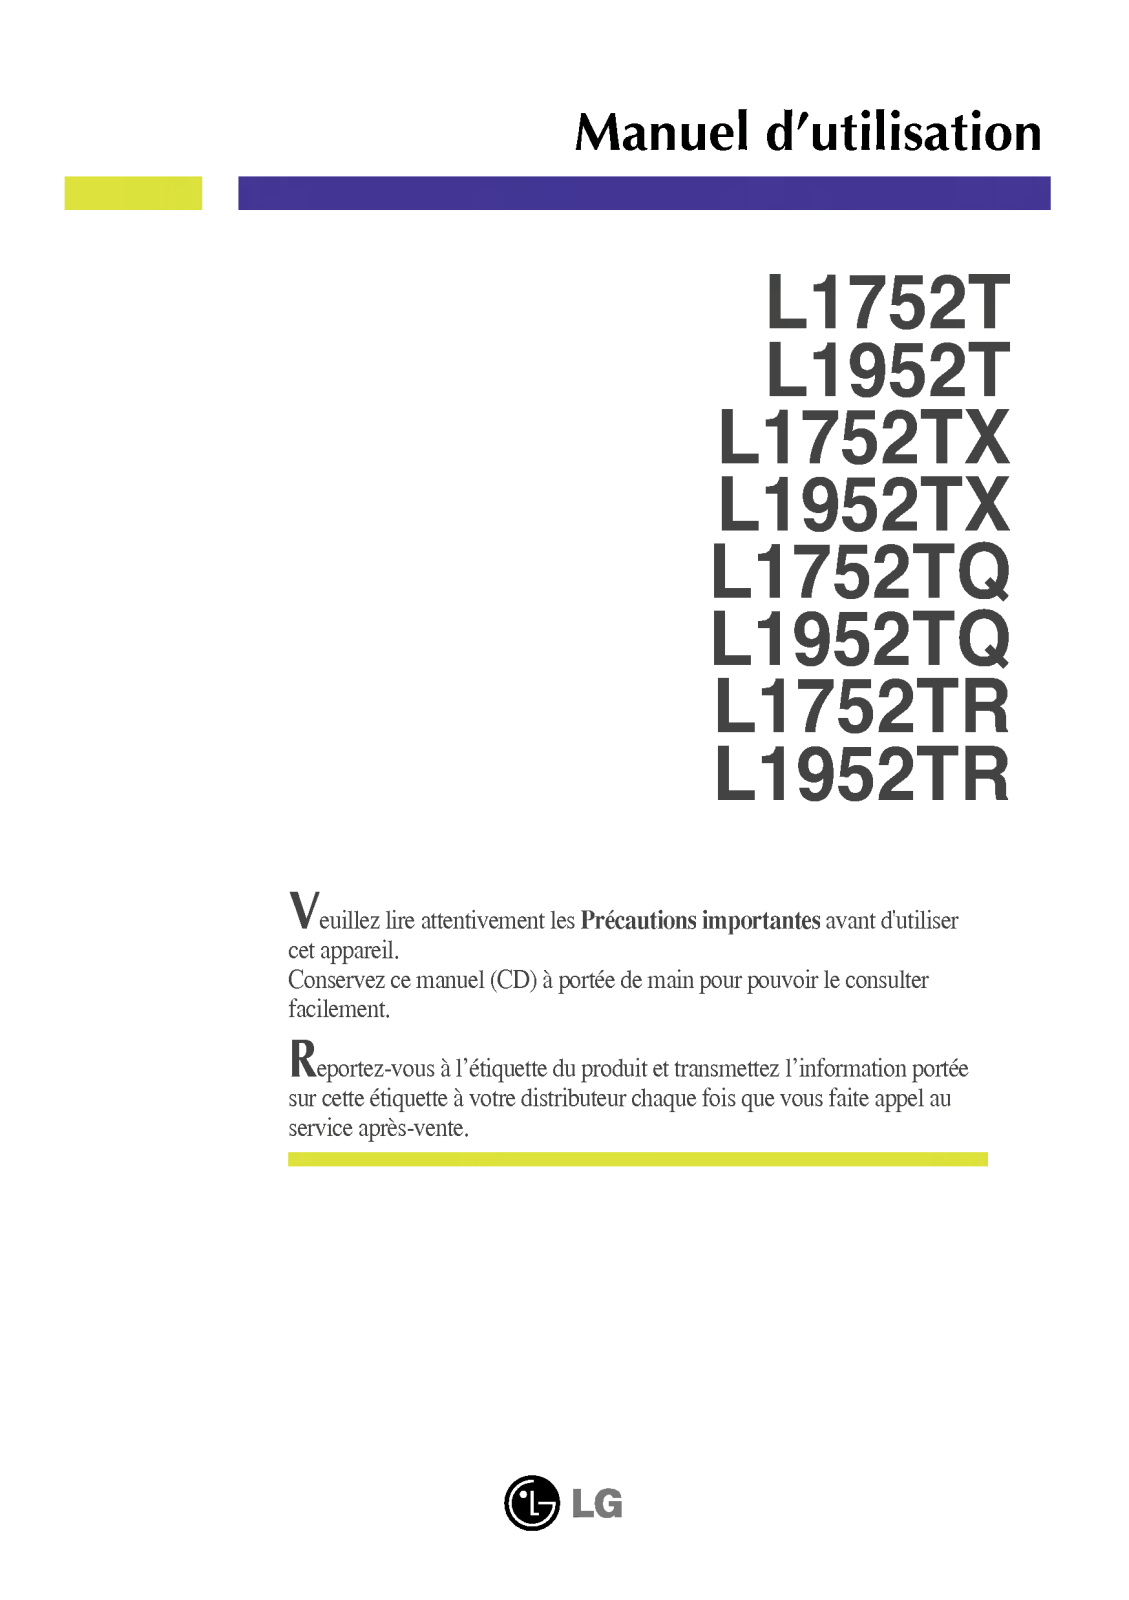 LG L1952, L1952S, L1952T, L1952TQ User Manual